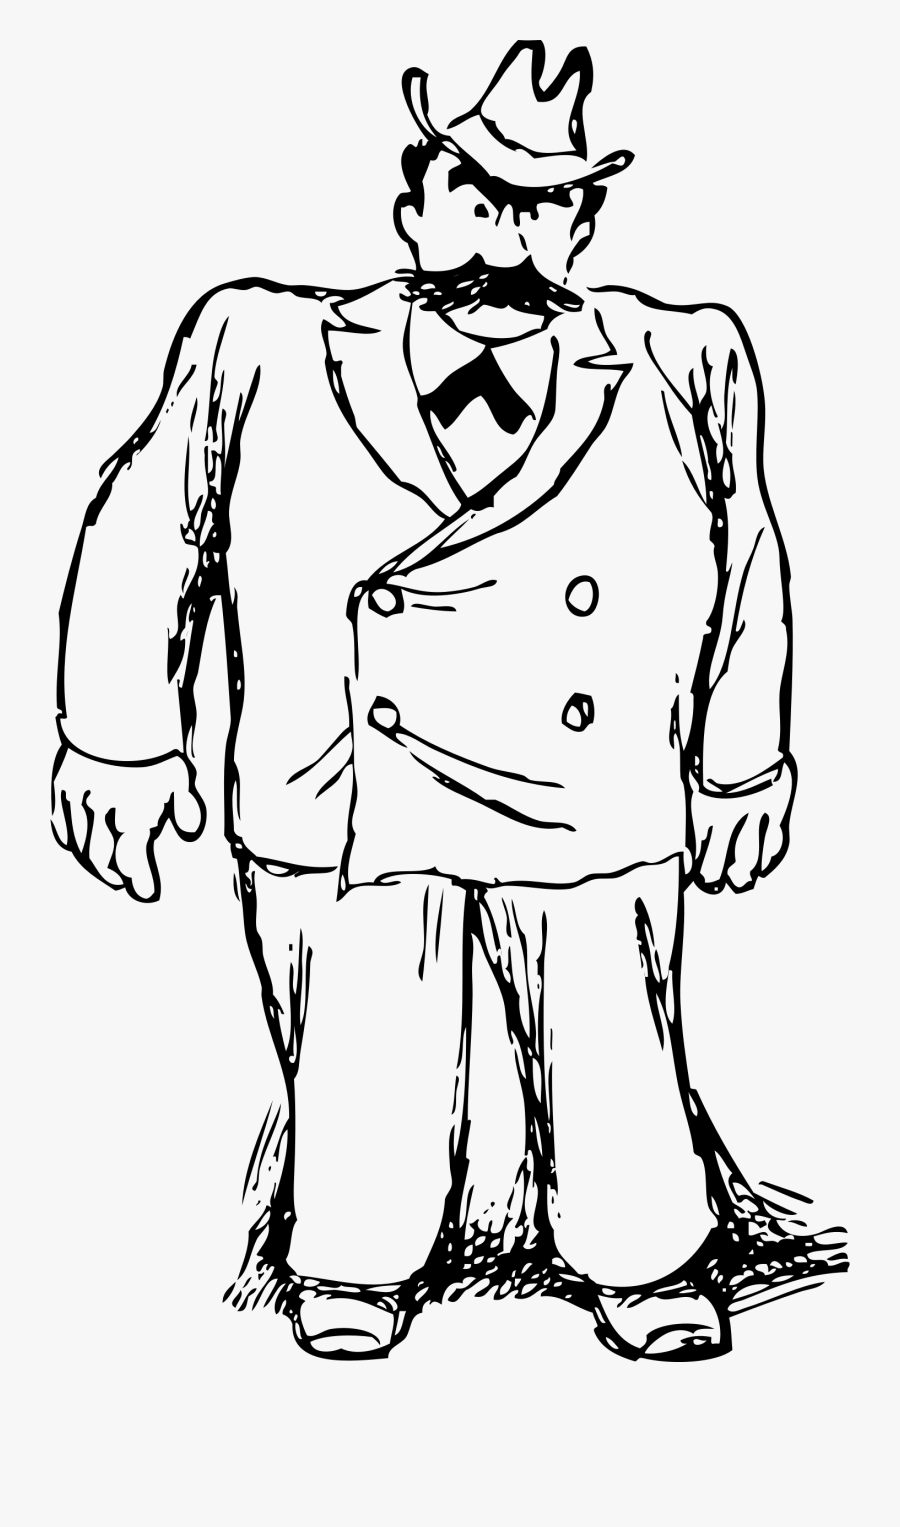 Big Man In A Suit - Big Man Clipart, Transparent Clipart